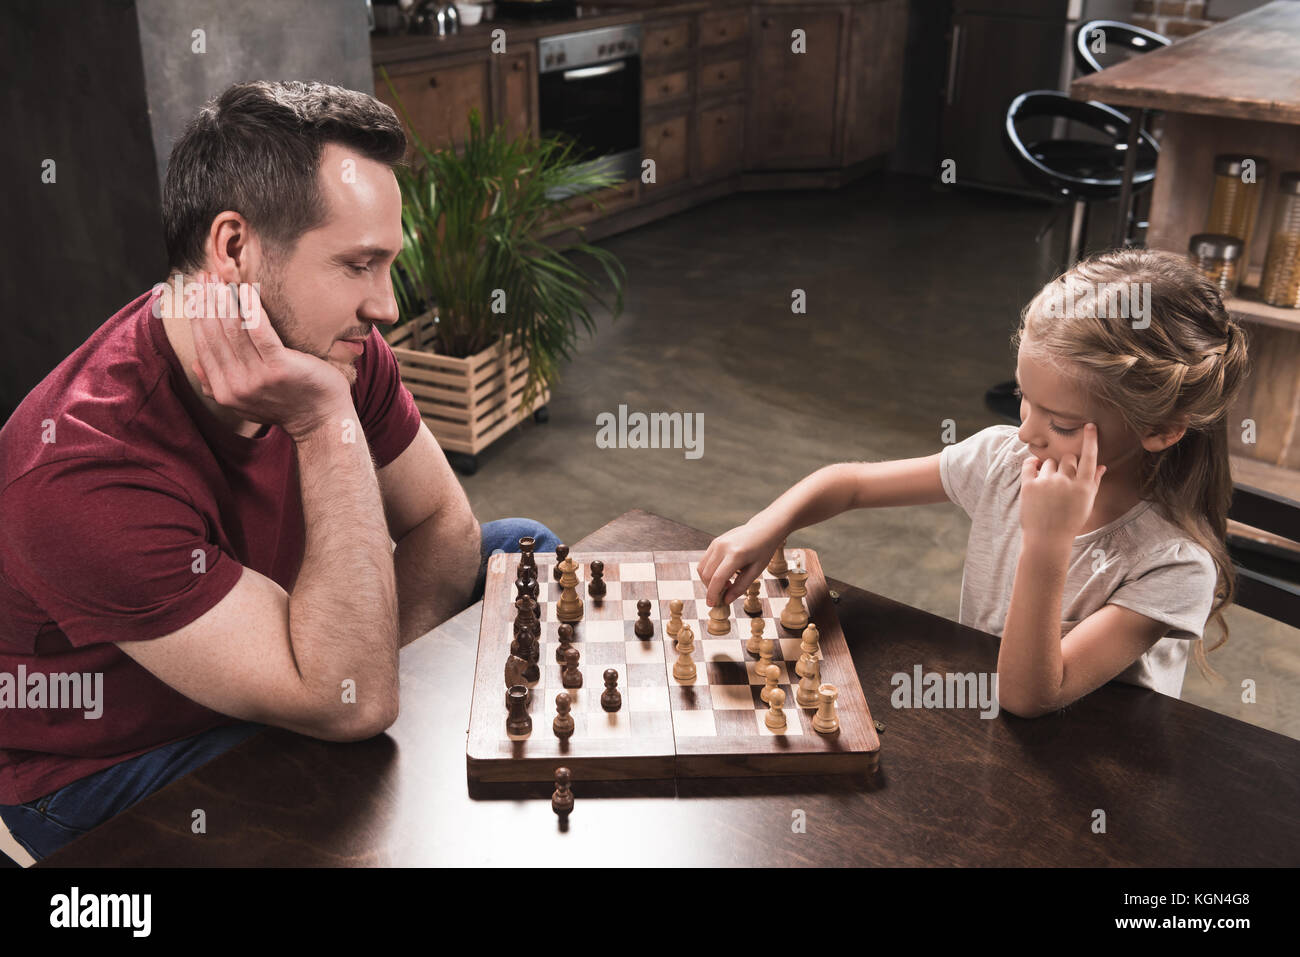 Папа играет в шахматы. Шахматы для детей. Дети играющие в шахмот. Семейные игры. Дети играют в настольные игры.